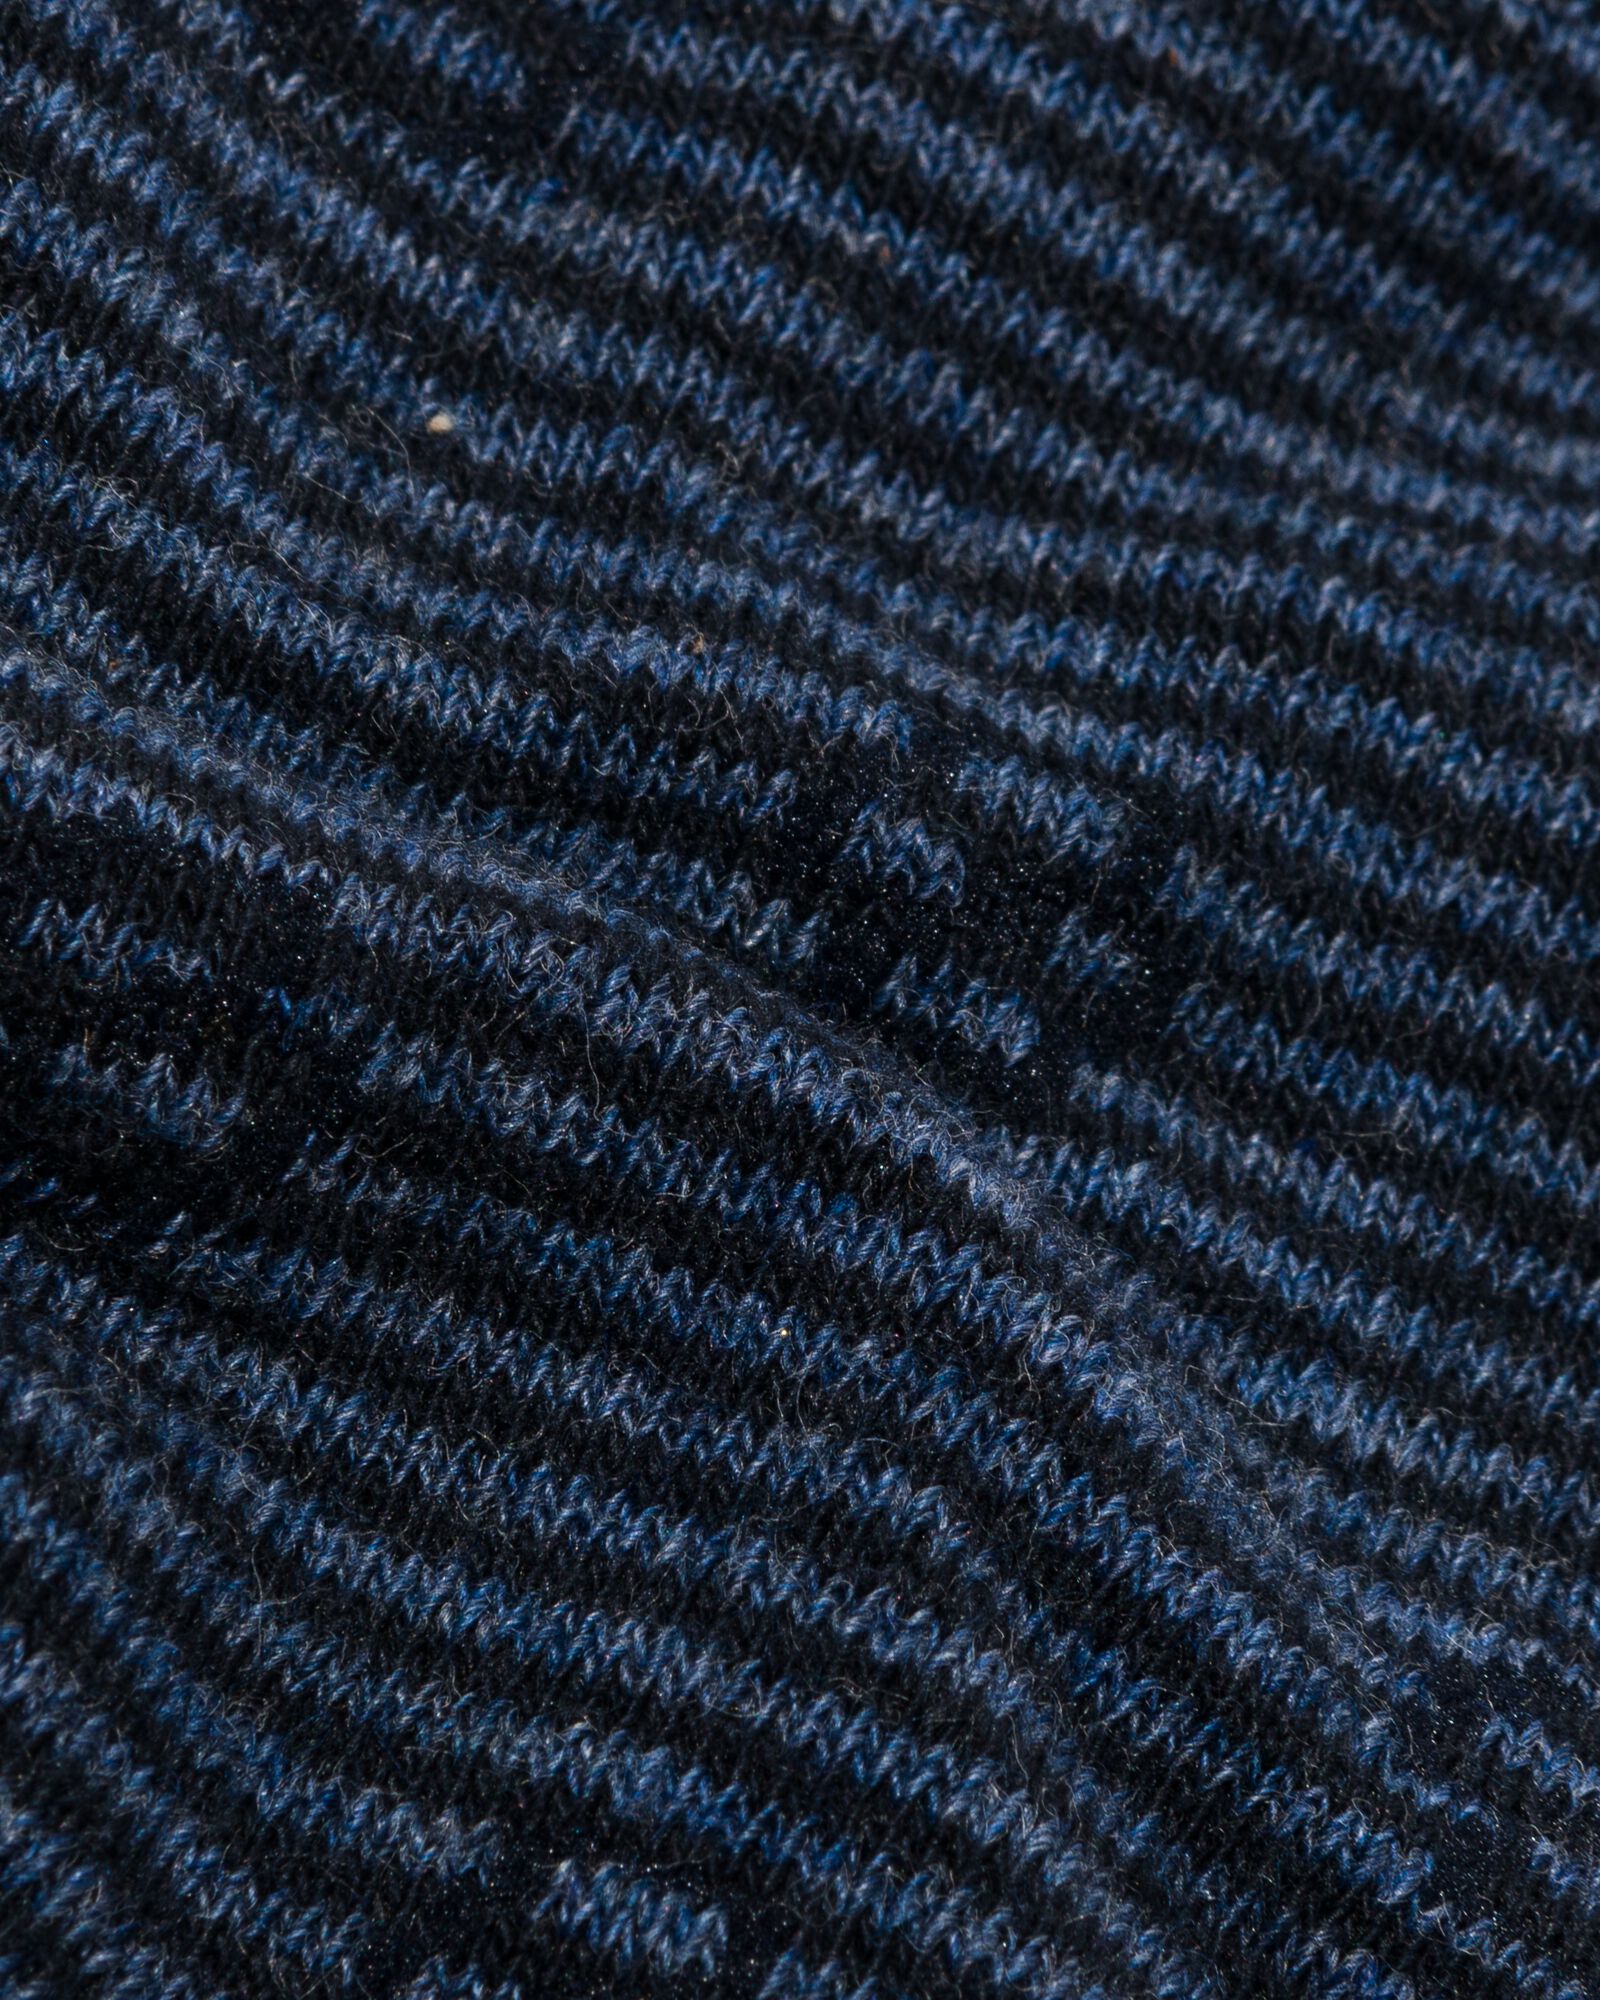 5 paires de chaussettes homme avec coton bleu foncé - HEMA